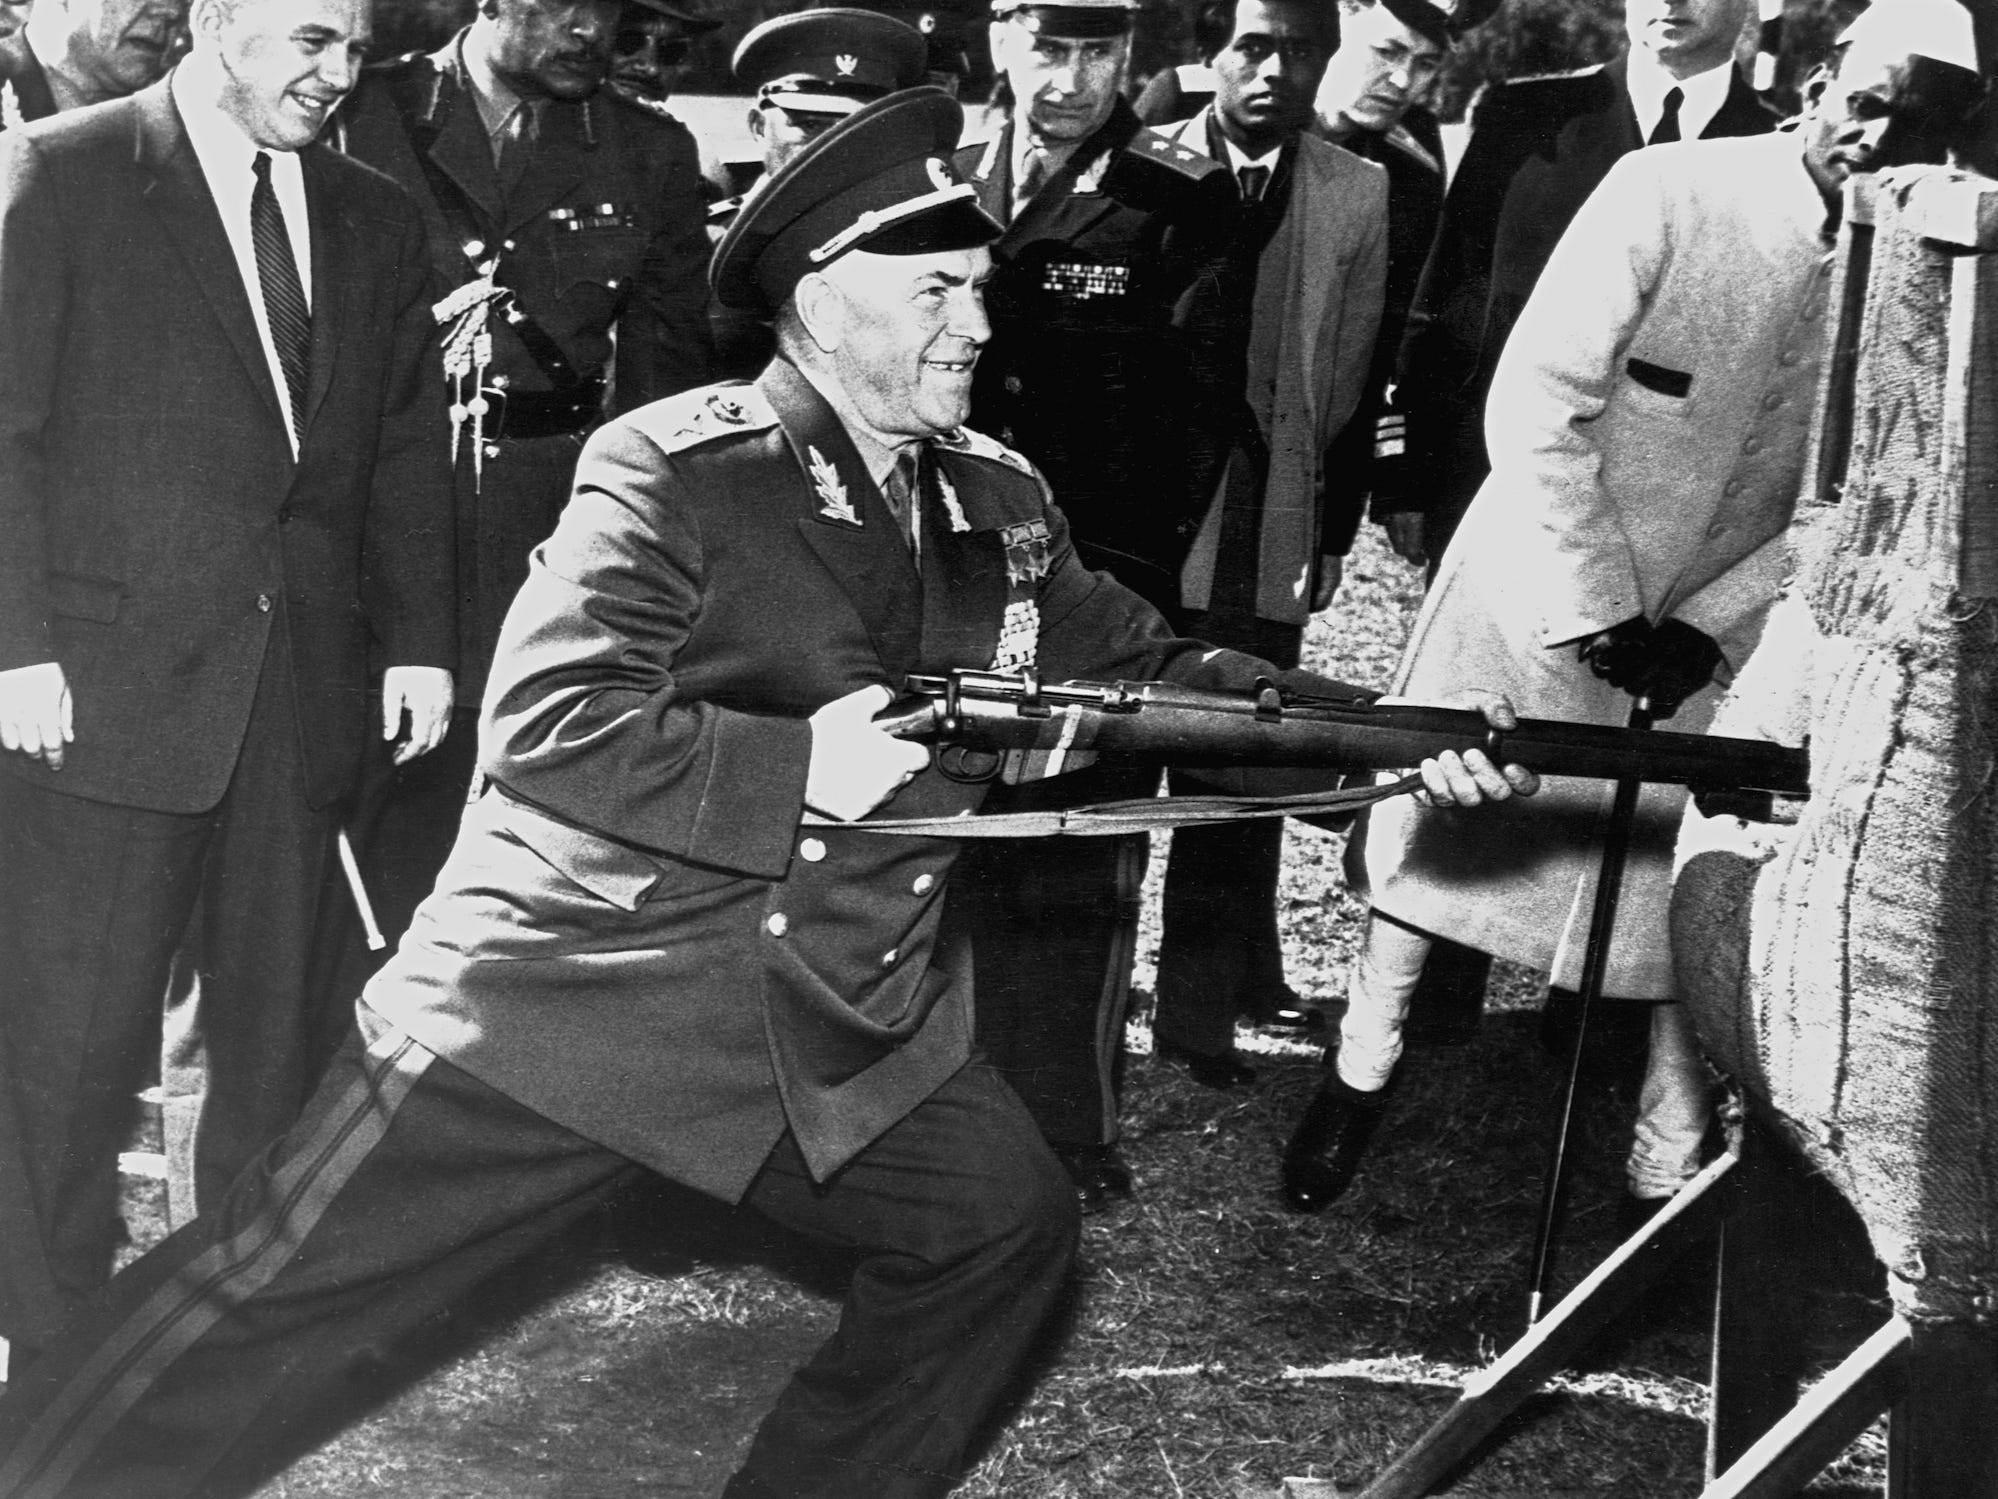 Der sowjetische Verteidigungsminister Georgi Schukow stößt das Bajonett eines Gewehrs in eine Attrappe, während eine Gruppe zuschaut